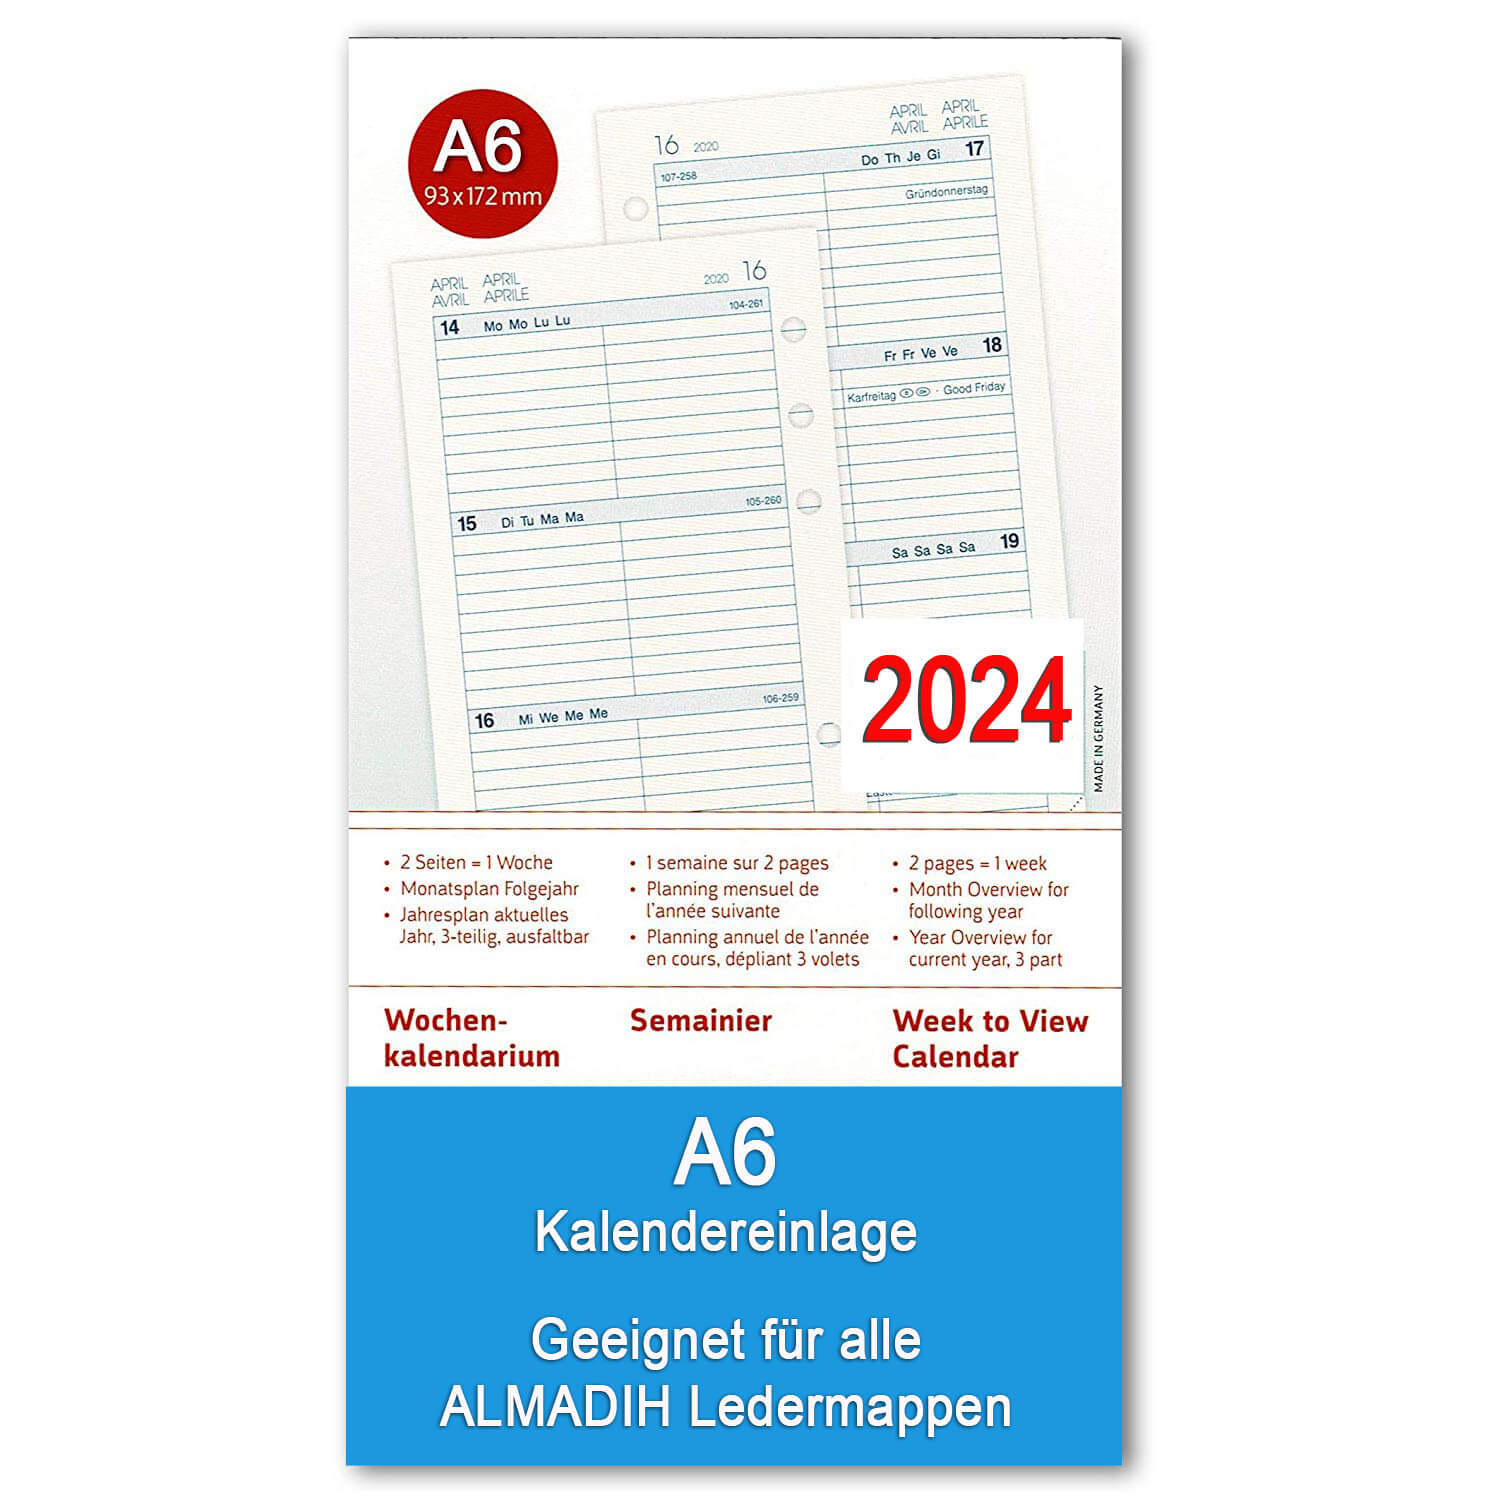 ALMADIH Kalendereinlage A6 Kompakt für 2024 - 1 Woche auf 2 Seiten